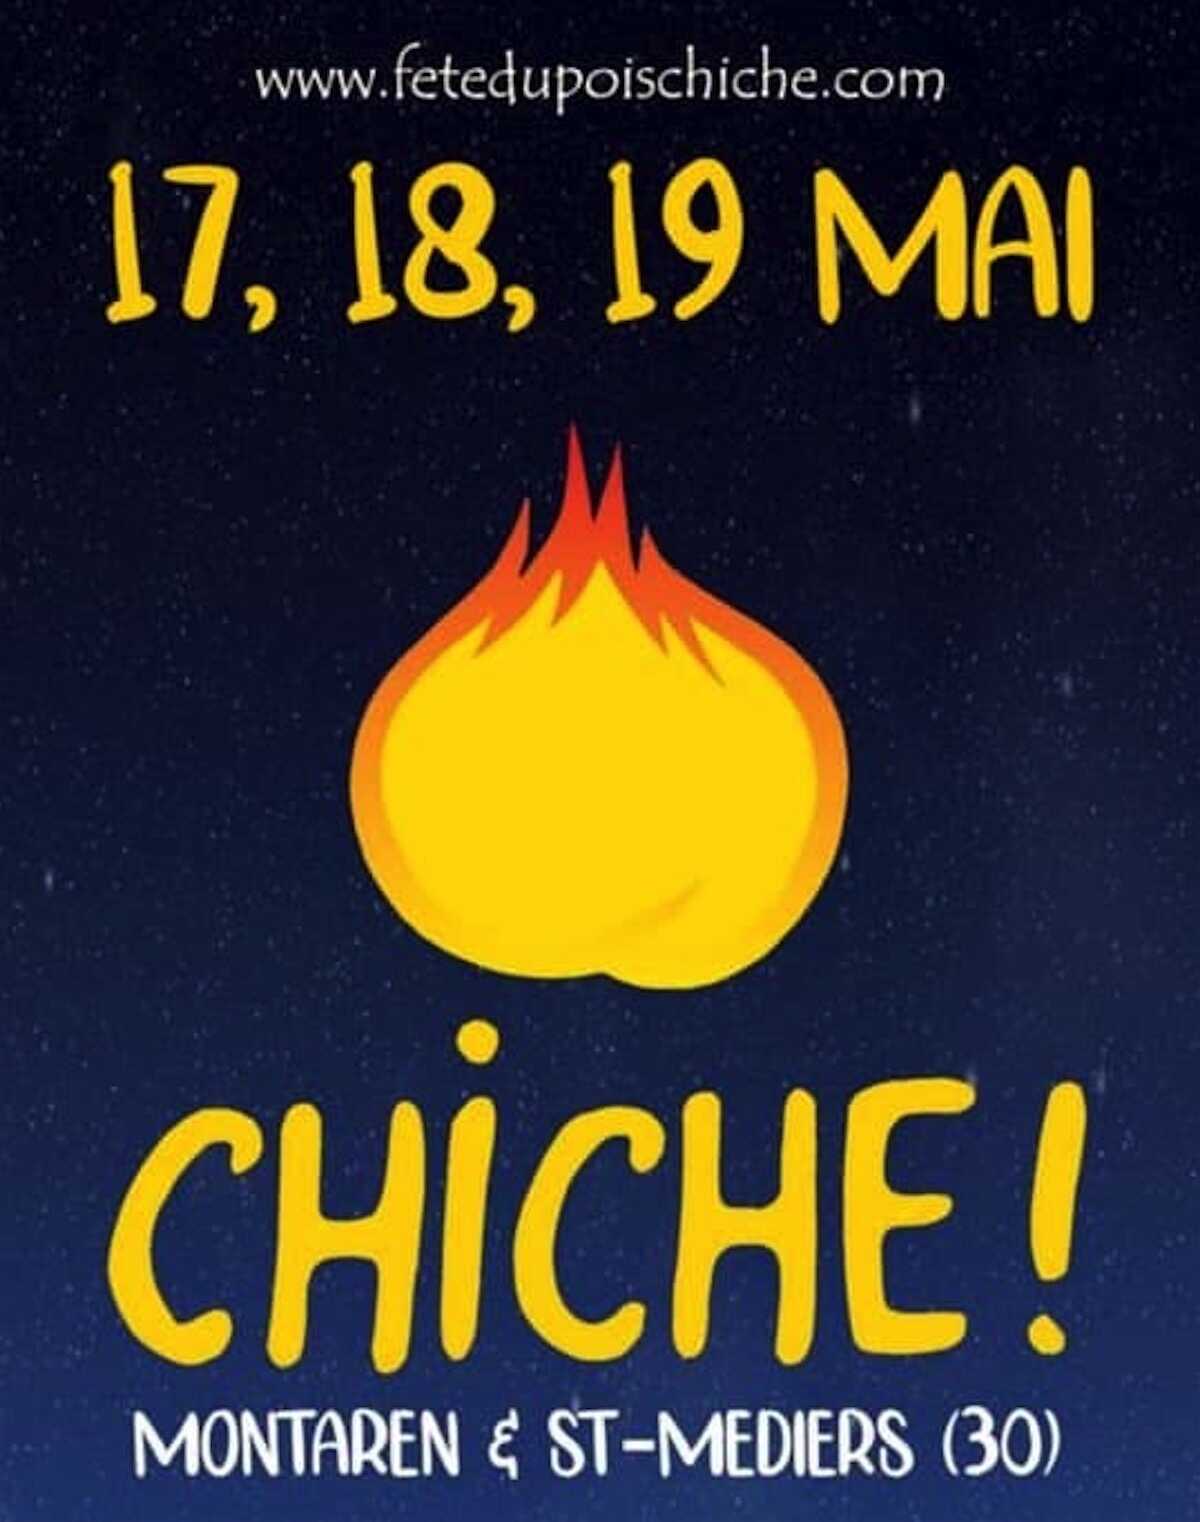 Chiche! (Bet you!), ALIORE will be at the Chickpea Festival (Pois Chiche festival)